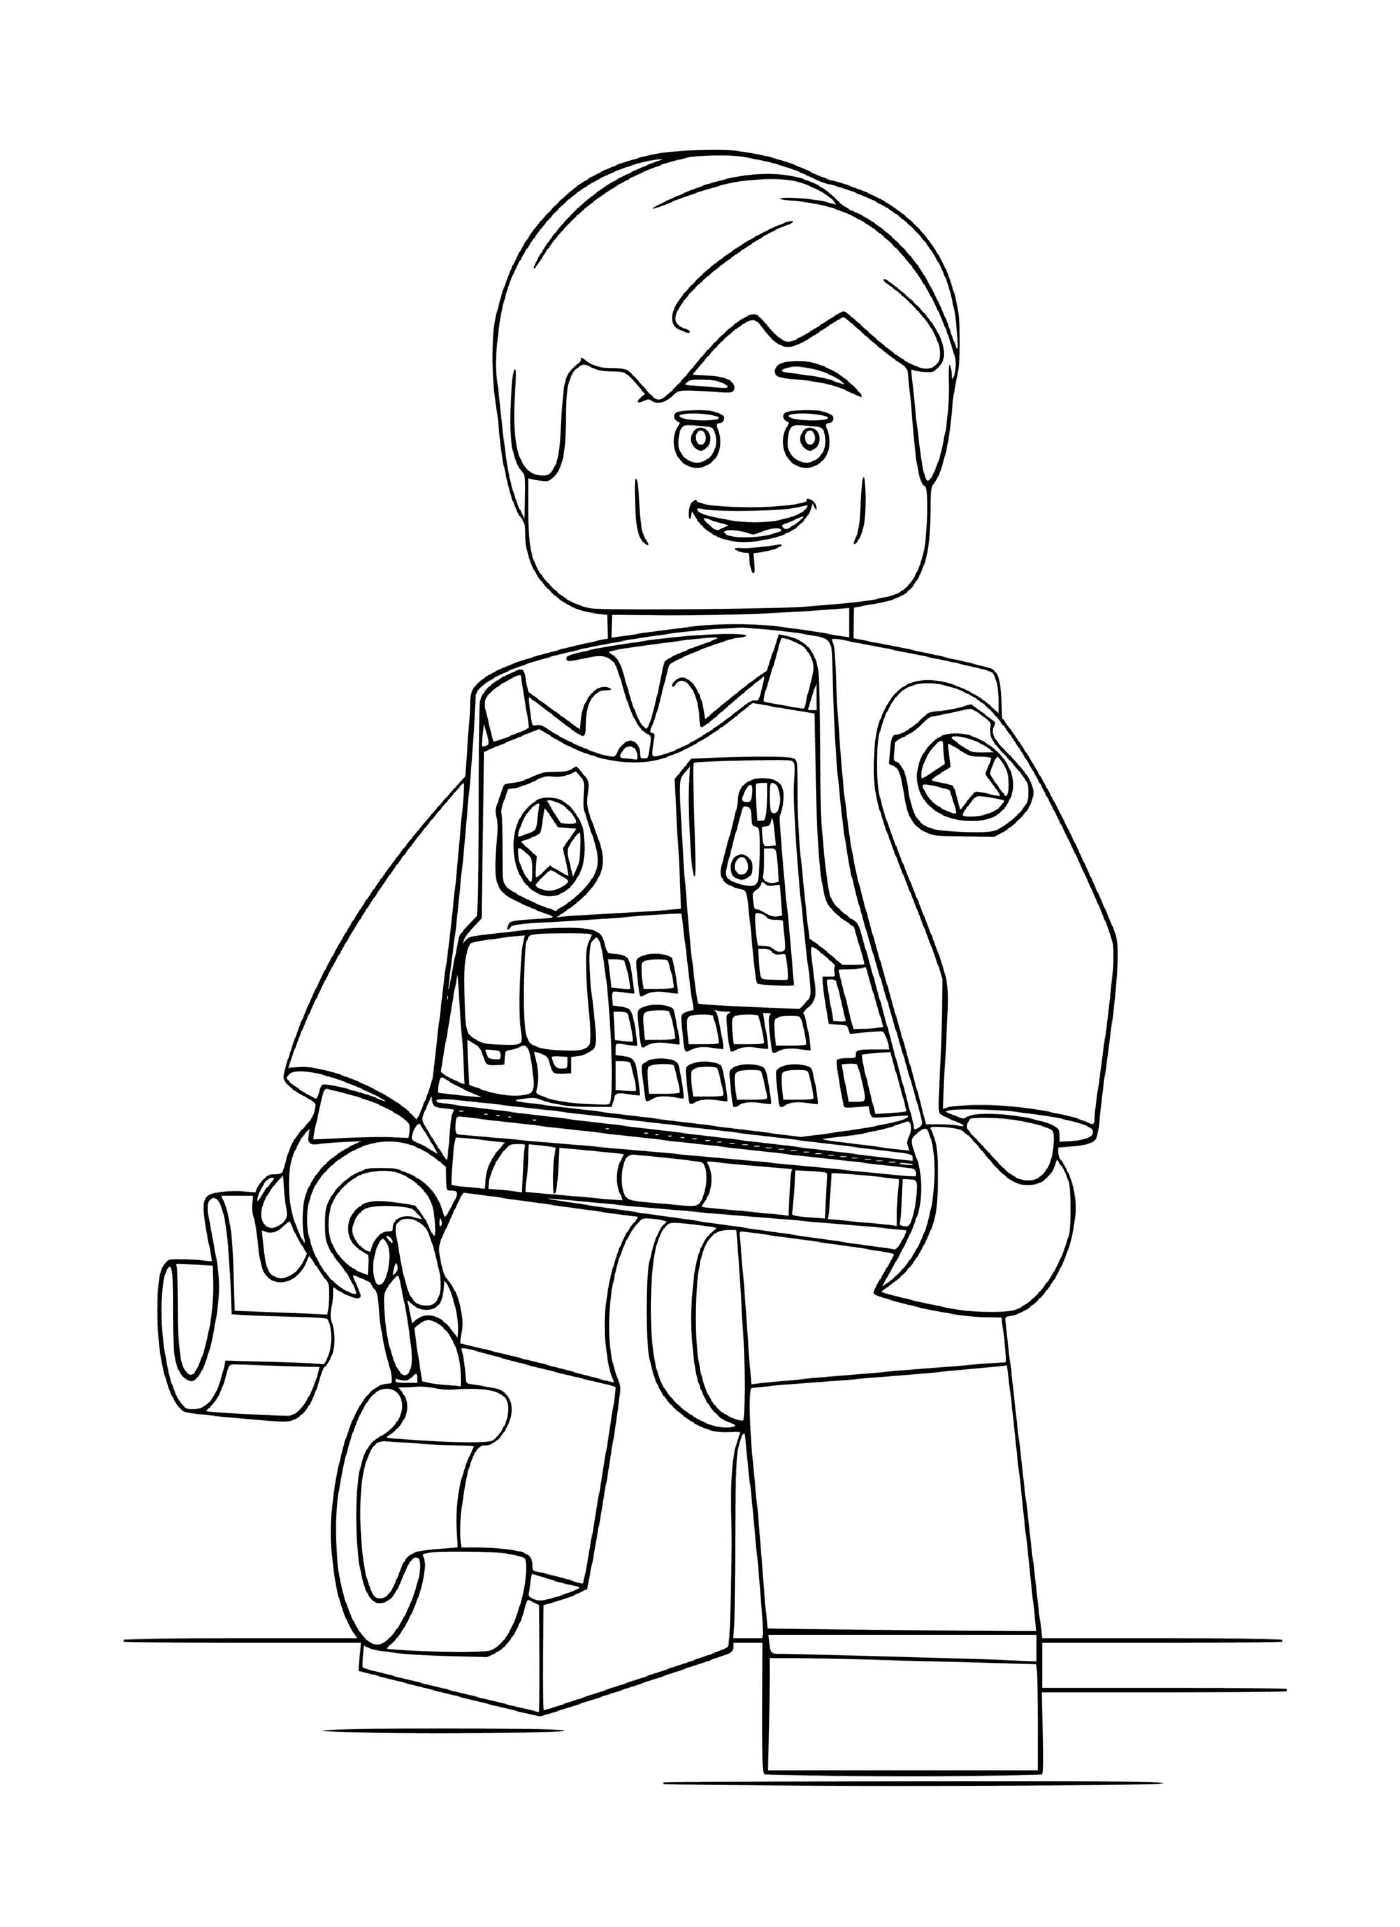  Personaje Lego policía esposado 